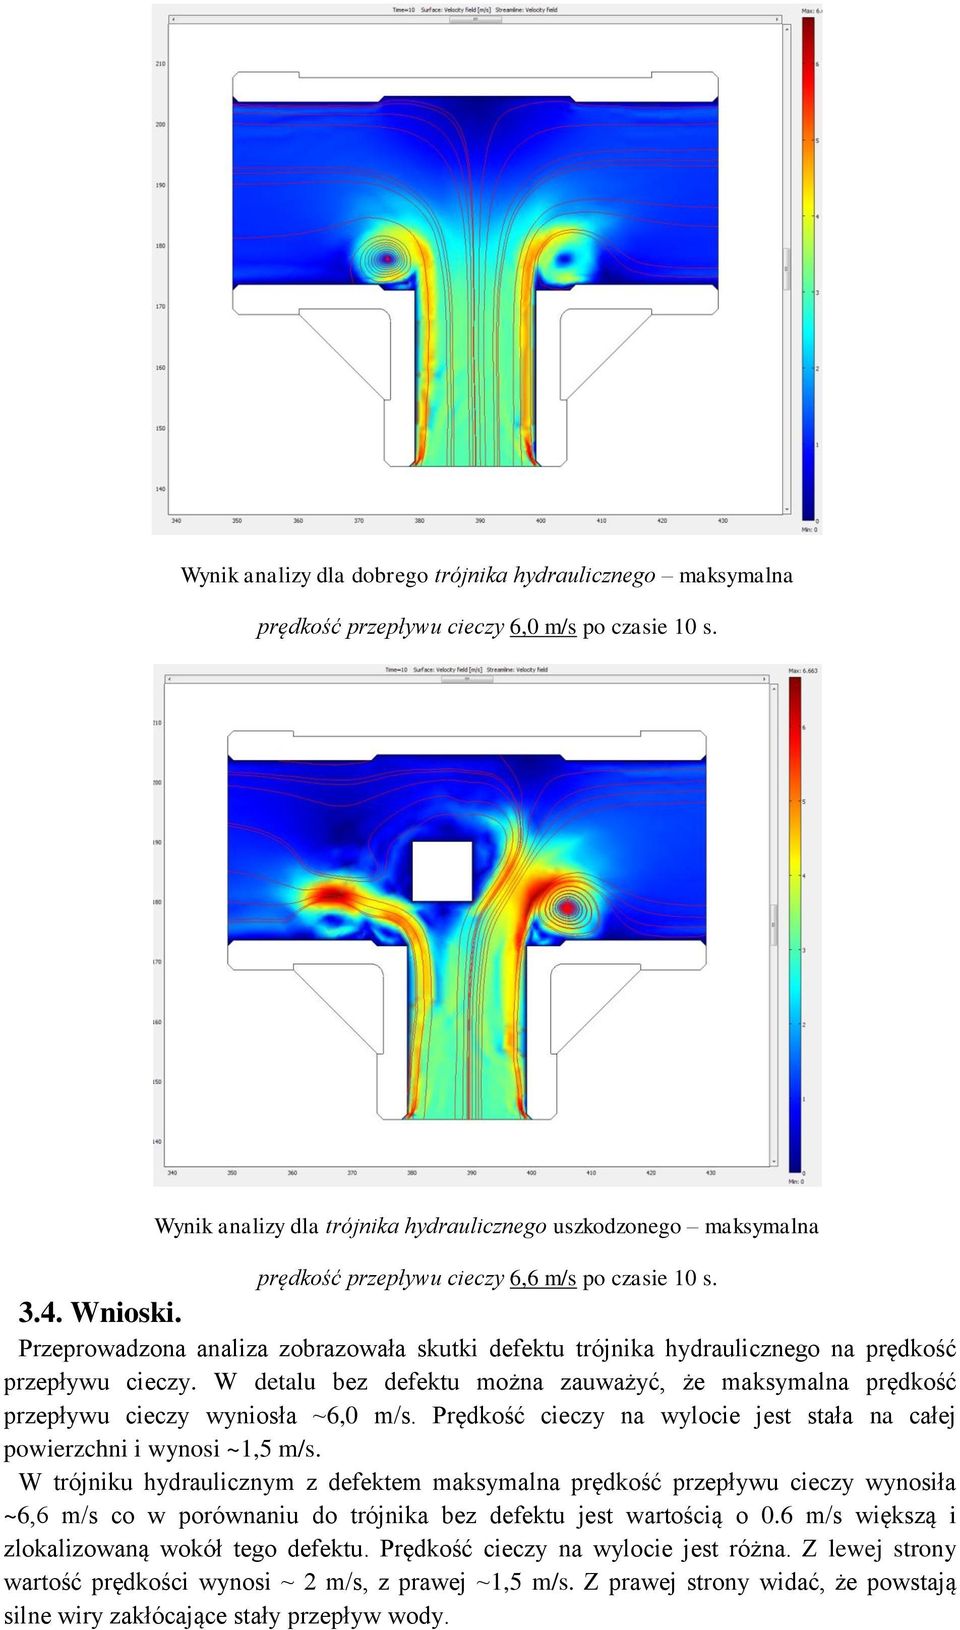 Przeprowadzona analiza zobrazowała skutki defektu trójnika hydraulicznego na prędkość przepływu cieczy. W detalu bez defektu można zauważyć, że maksymalna prędkość przepływu cieczy wyniosła ~6,0 m/s.